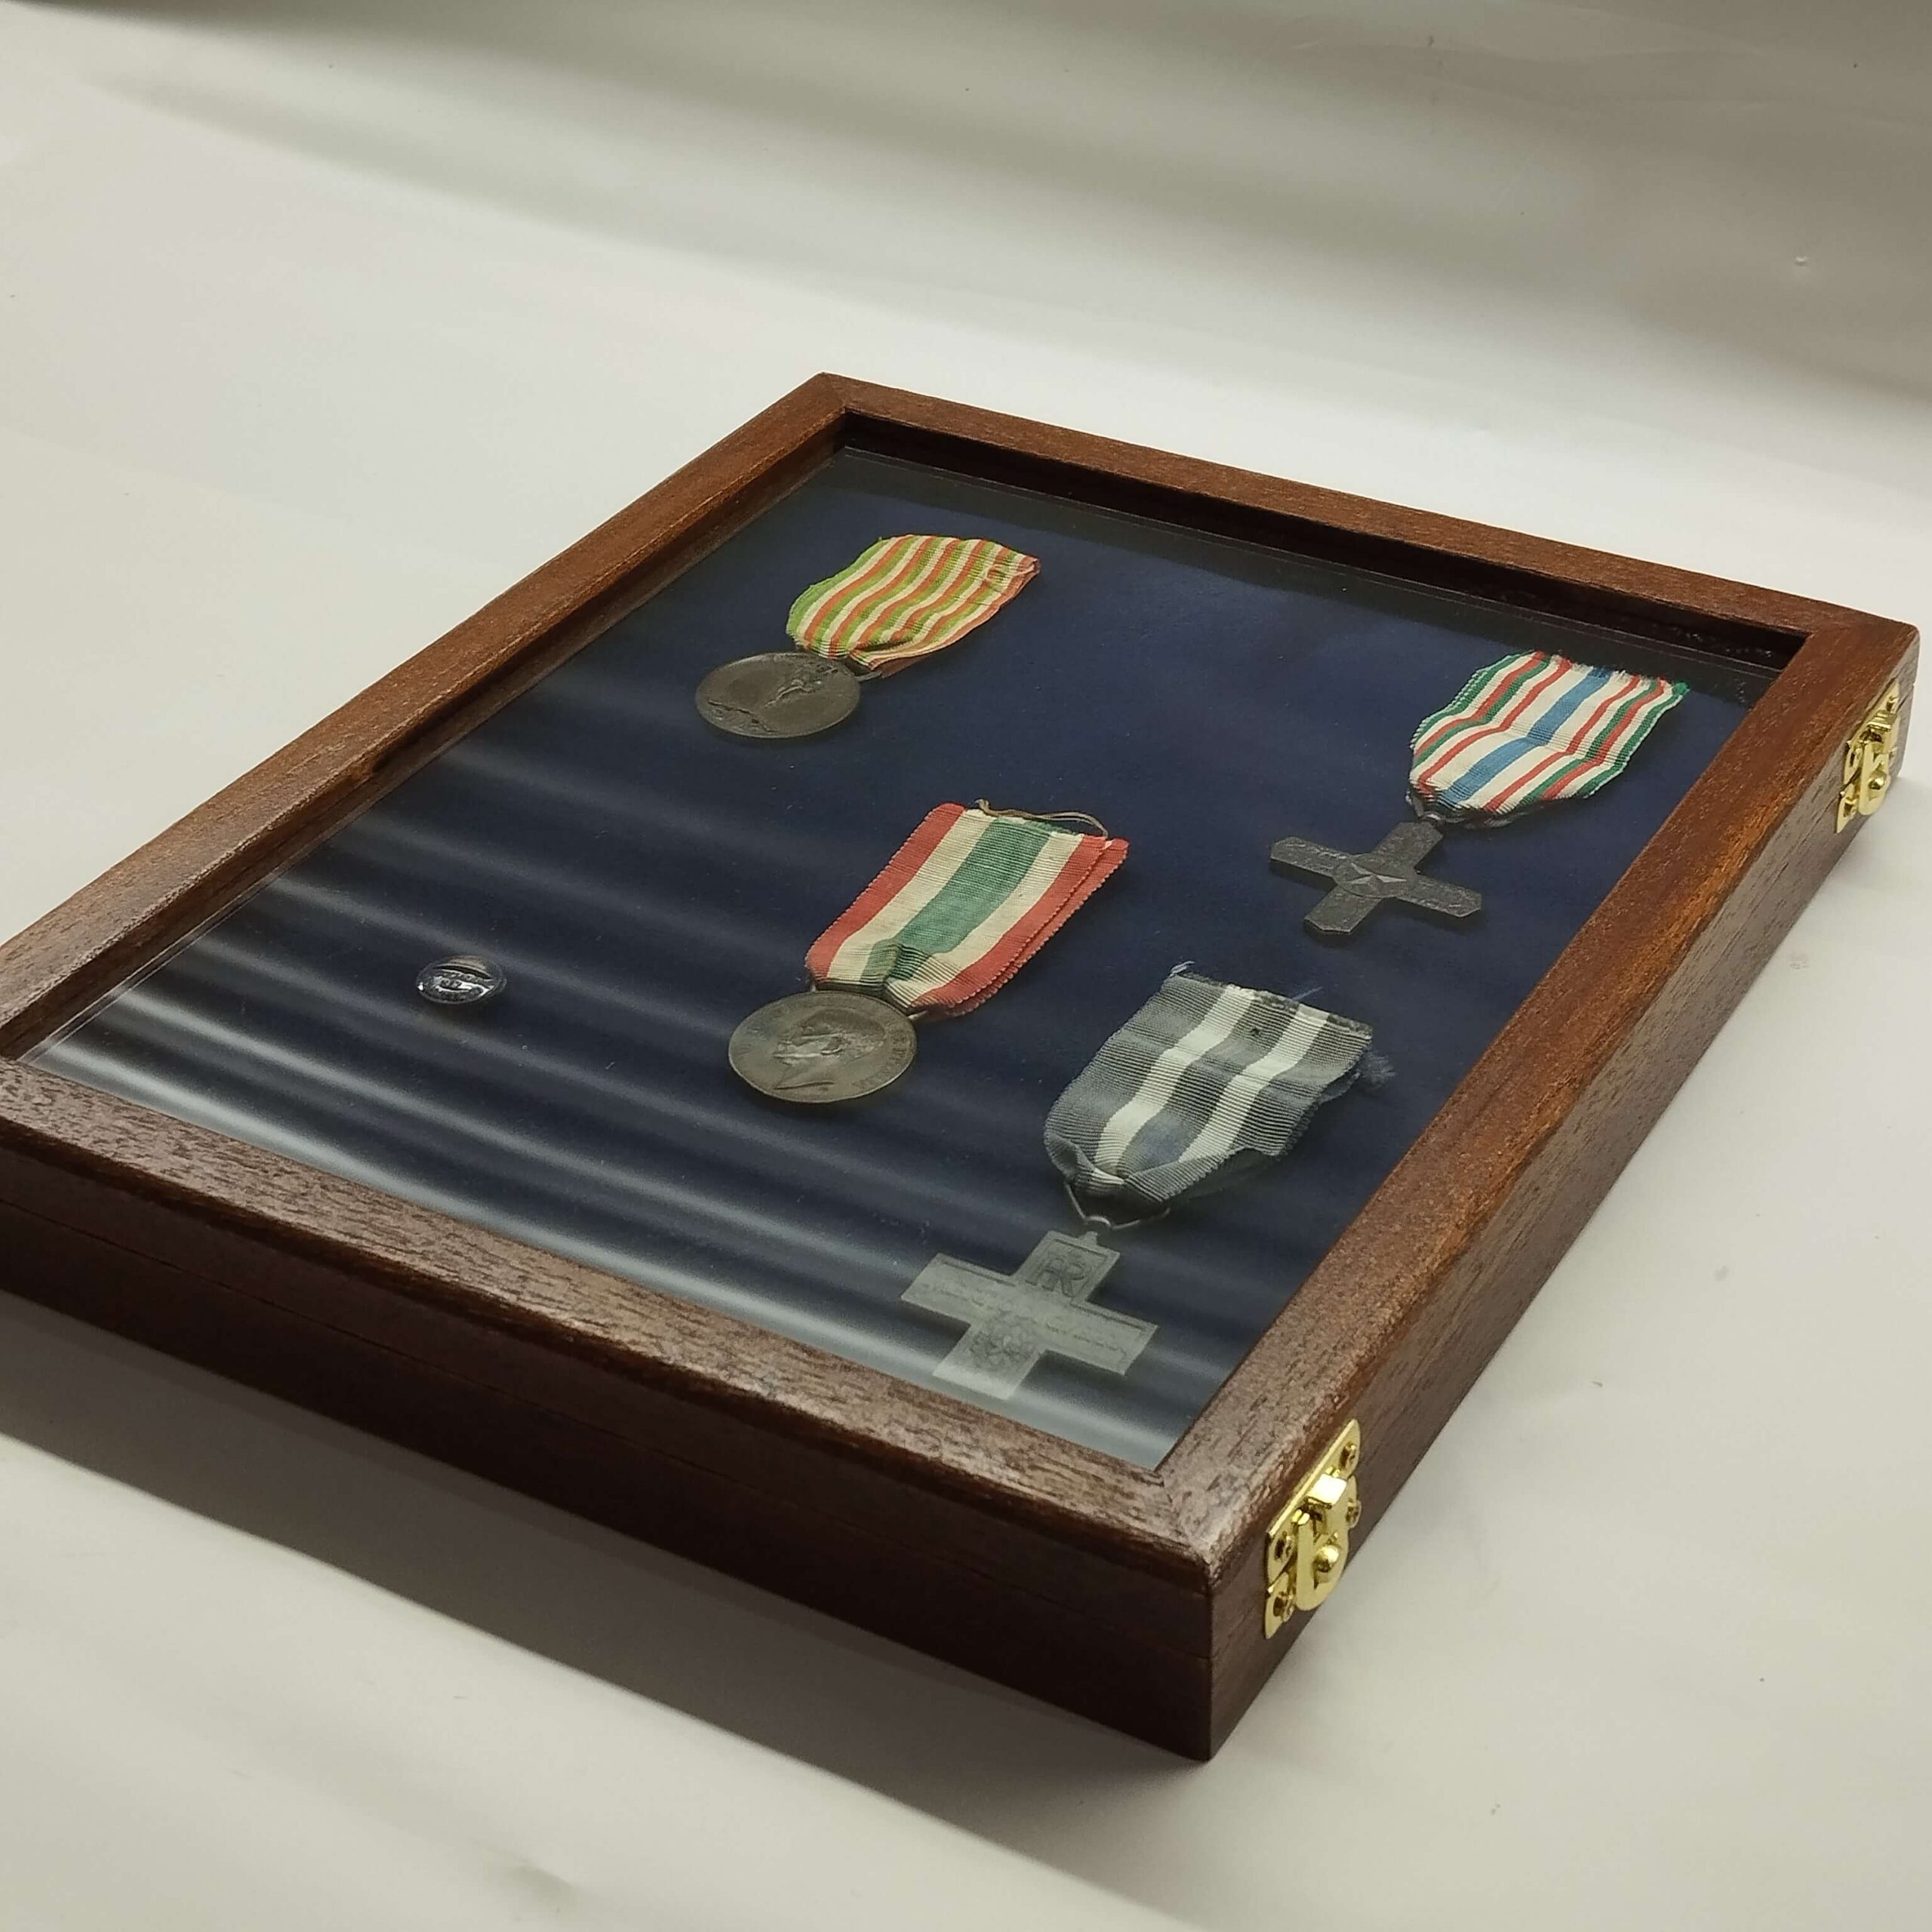 Cadre de présentation pour médailles militaires, cadre en bois